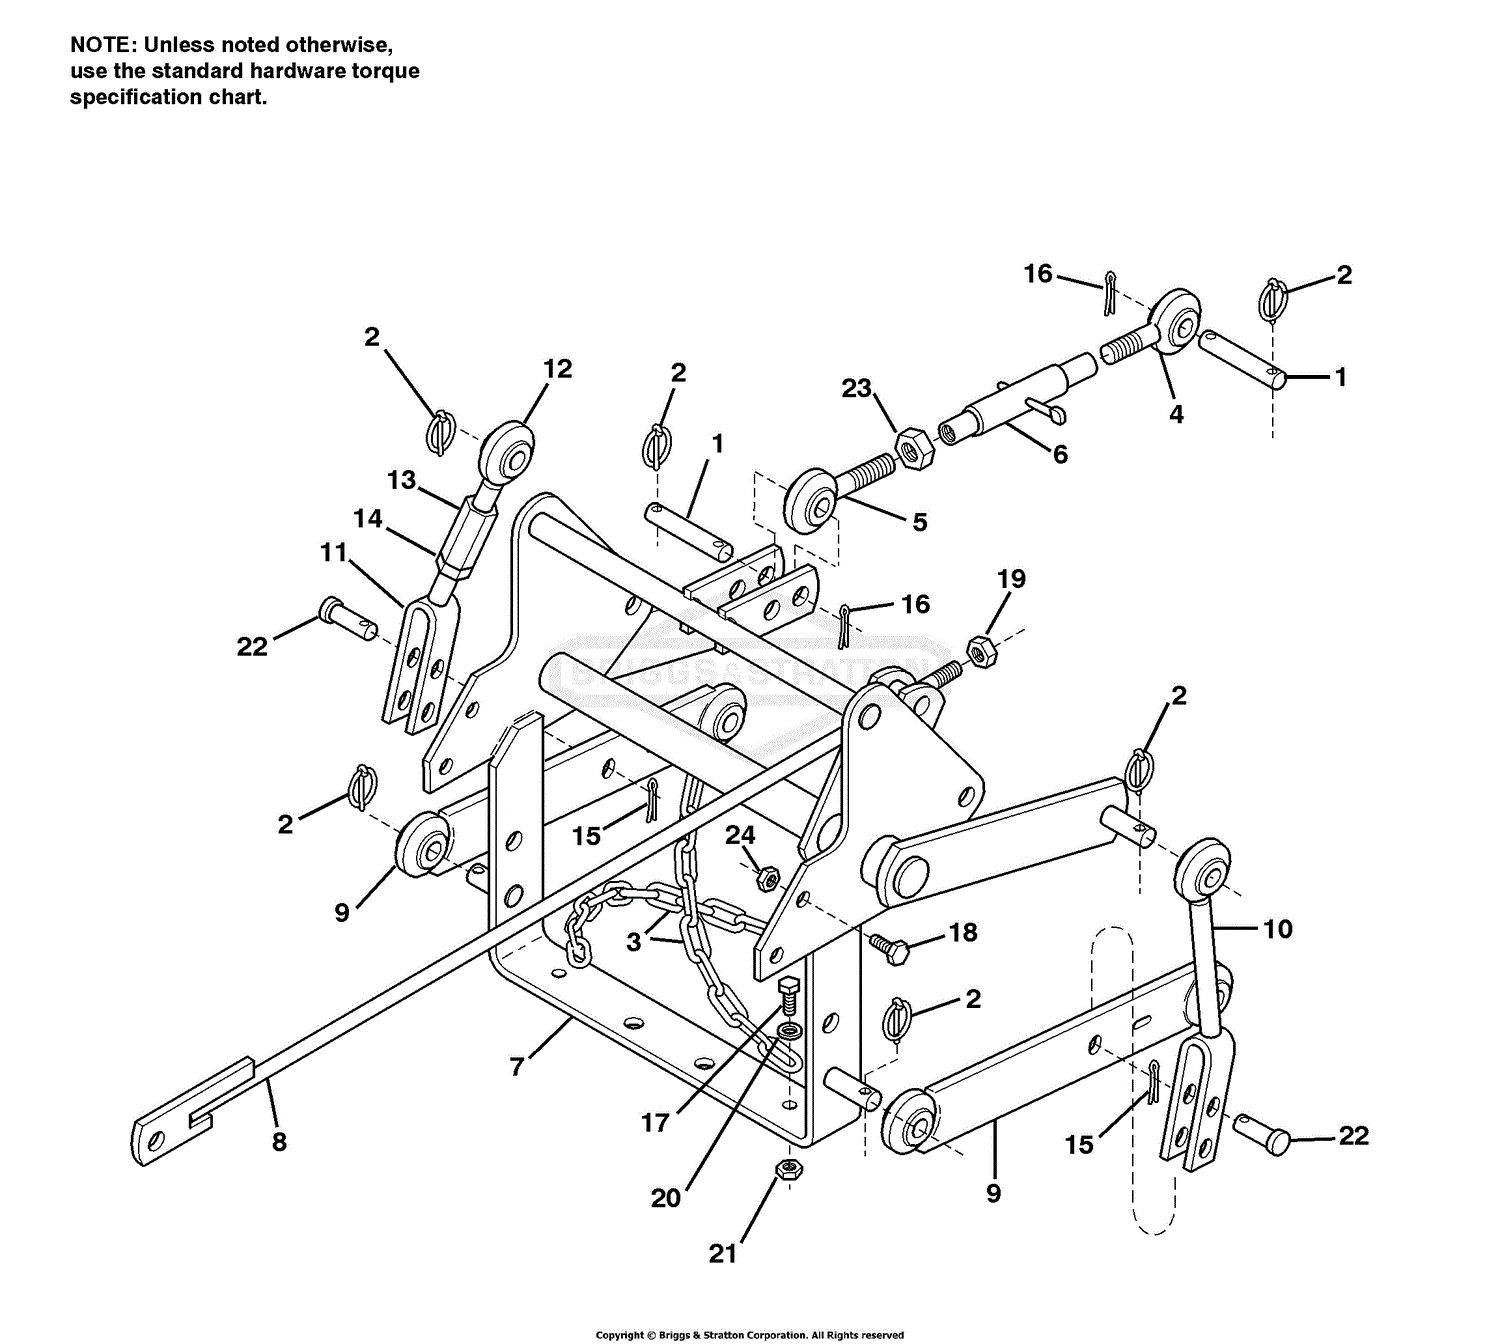 3 Point Hitch Parts Diagram Heat Exchanger Spare Parts